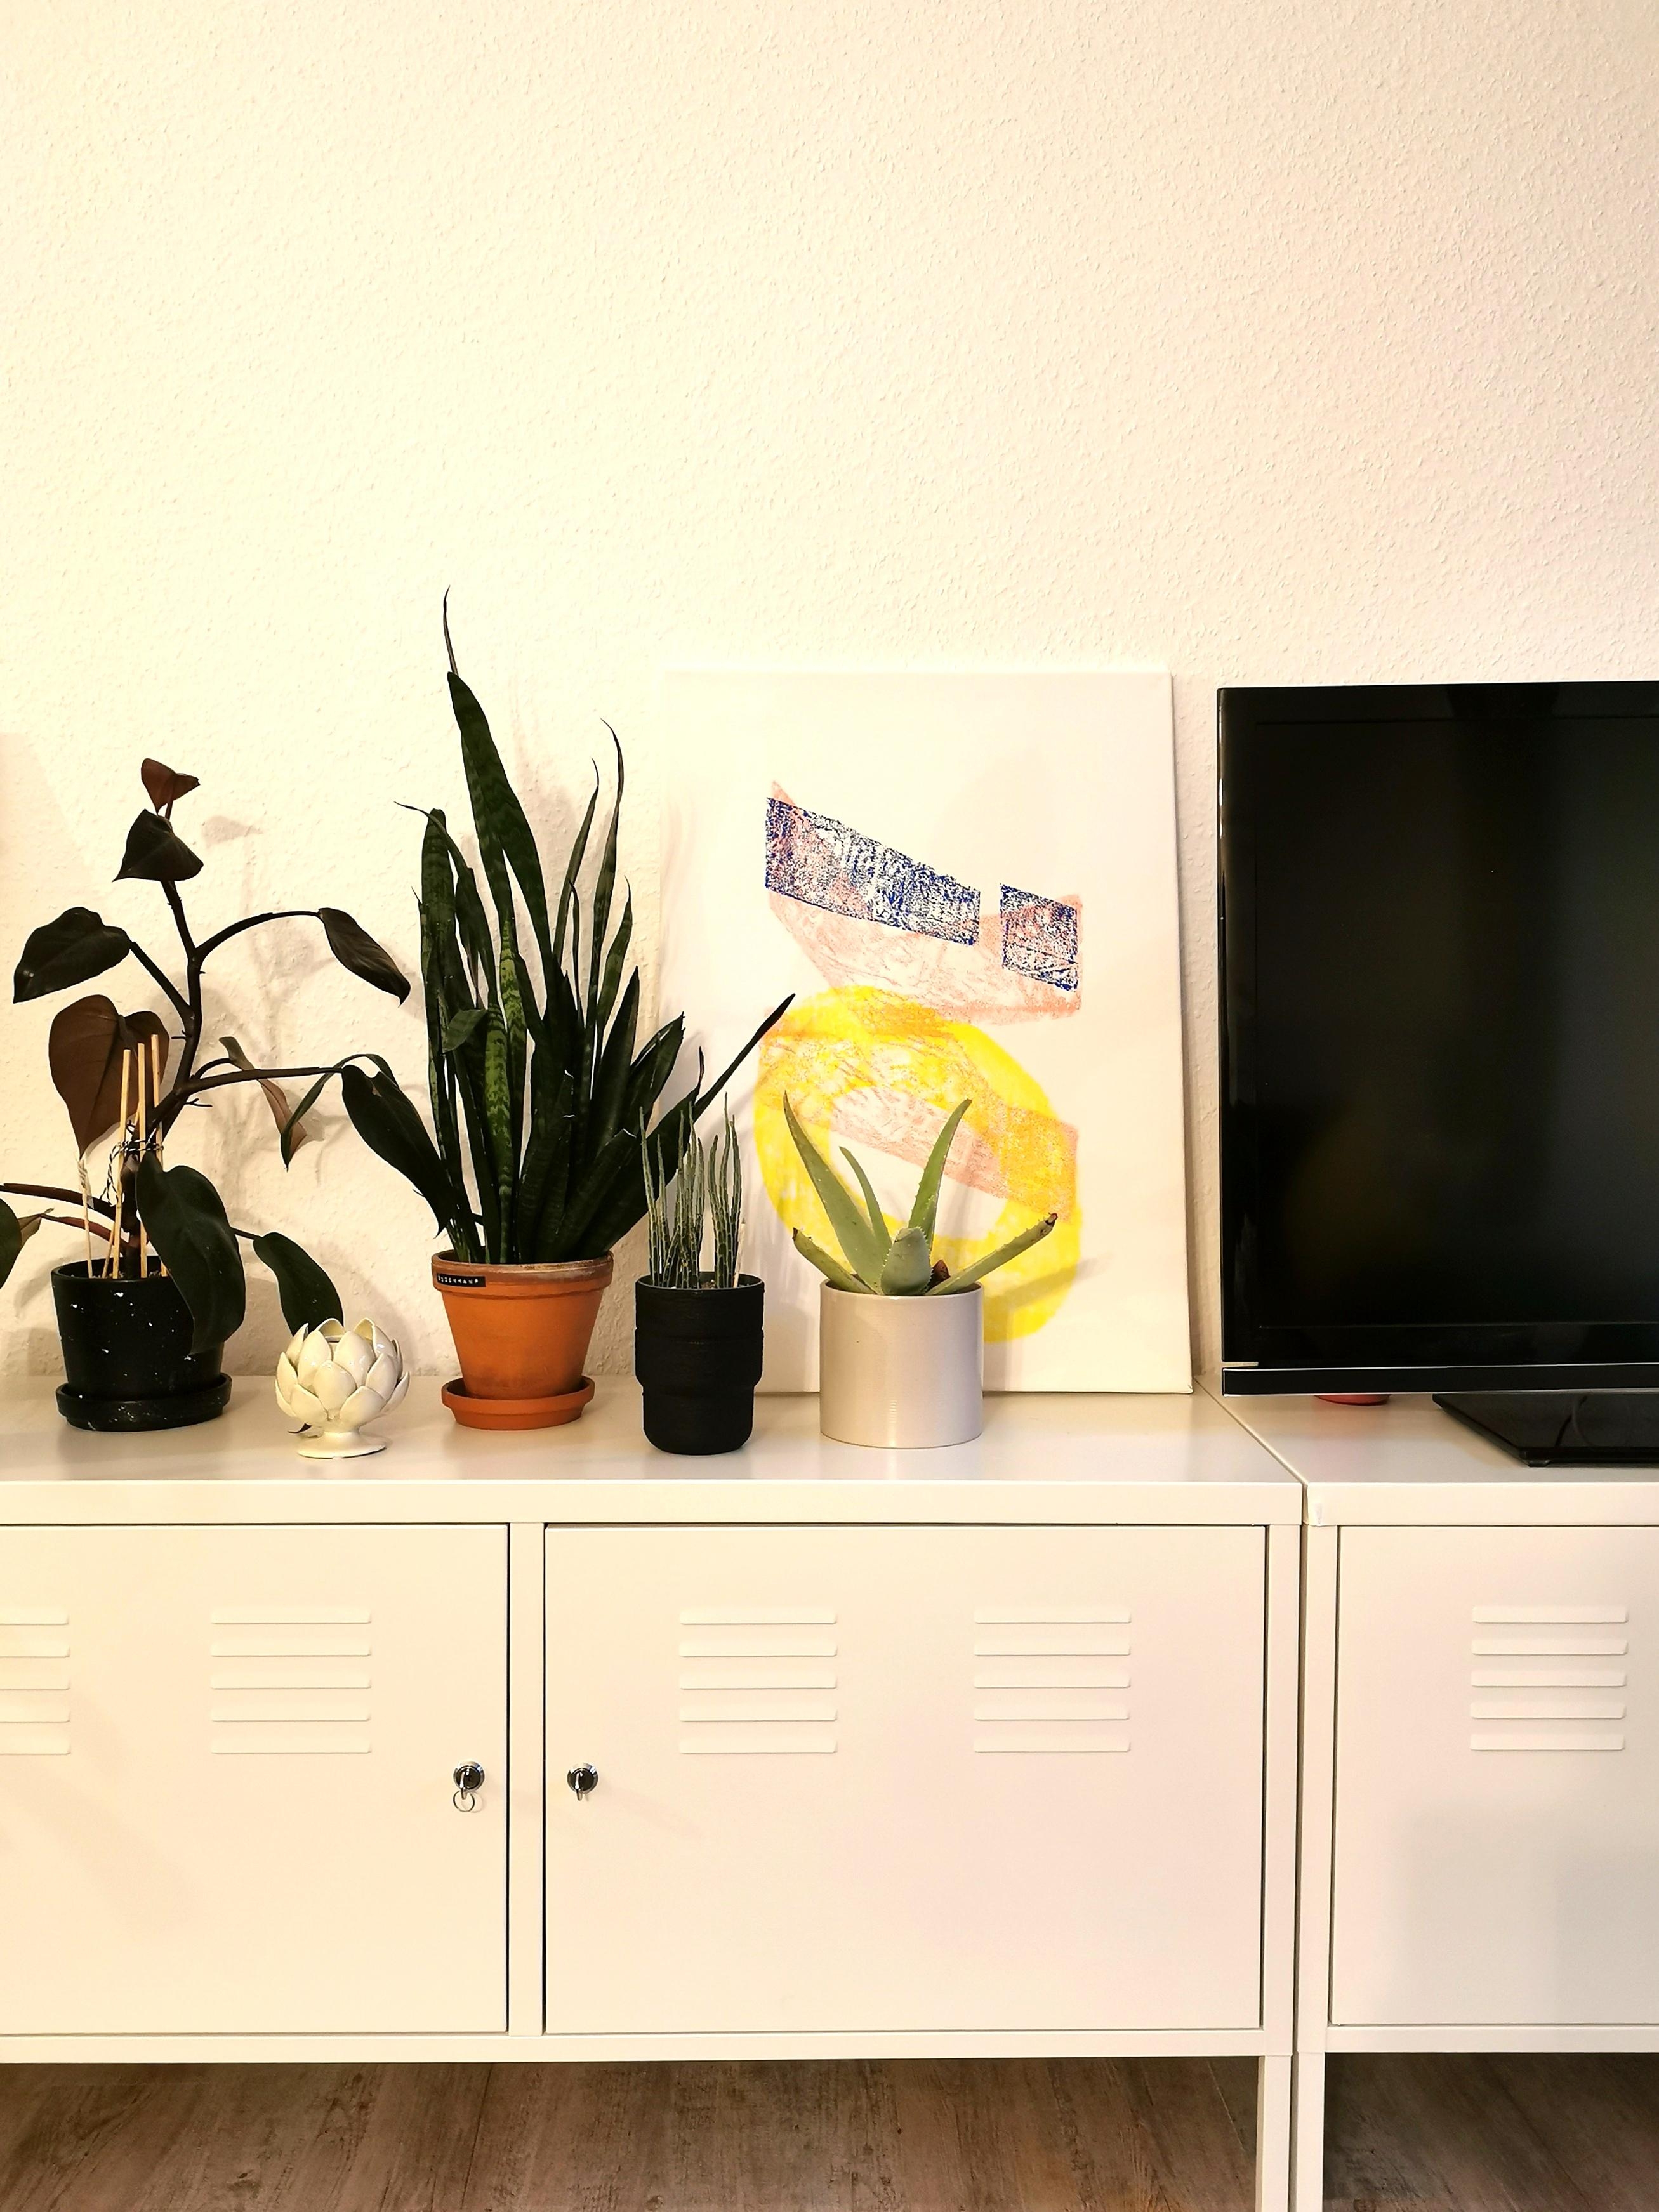 Voll OK!
#print #handmade #ikeaps #wohnzimmer #bildergalerie #zimmerpflanzen #ikea #urbanjungle